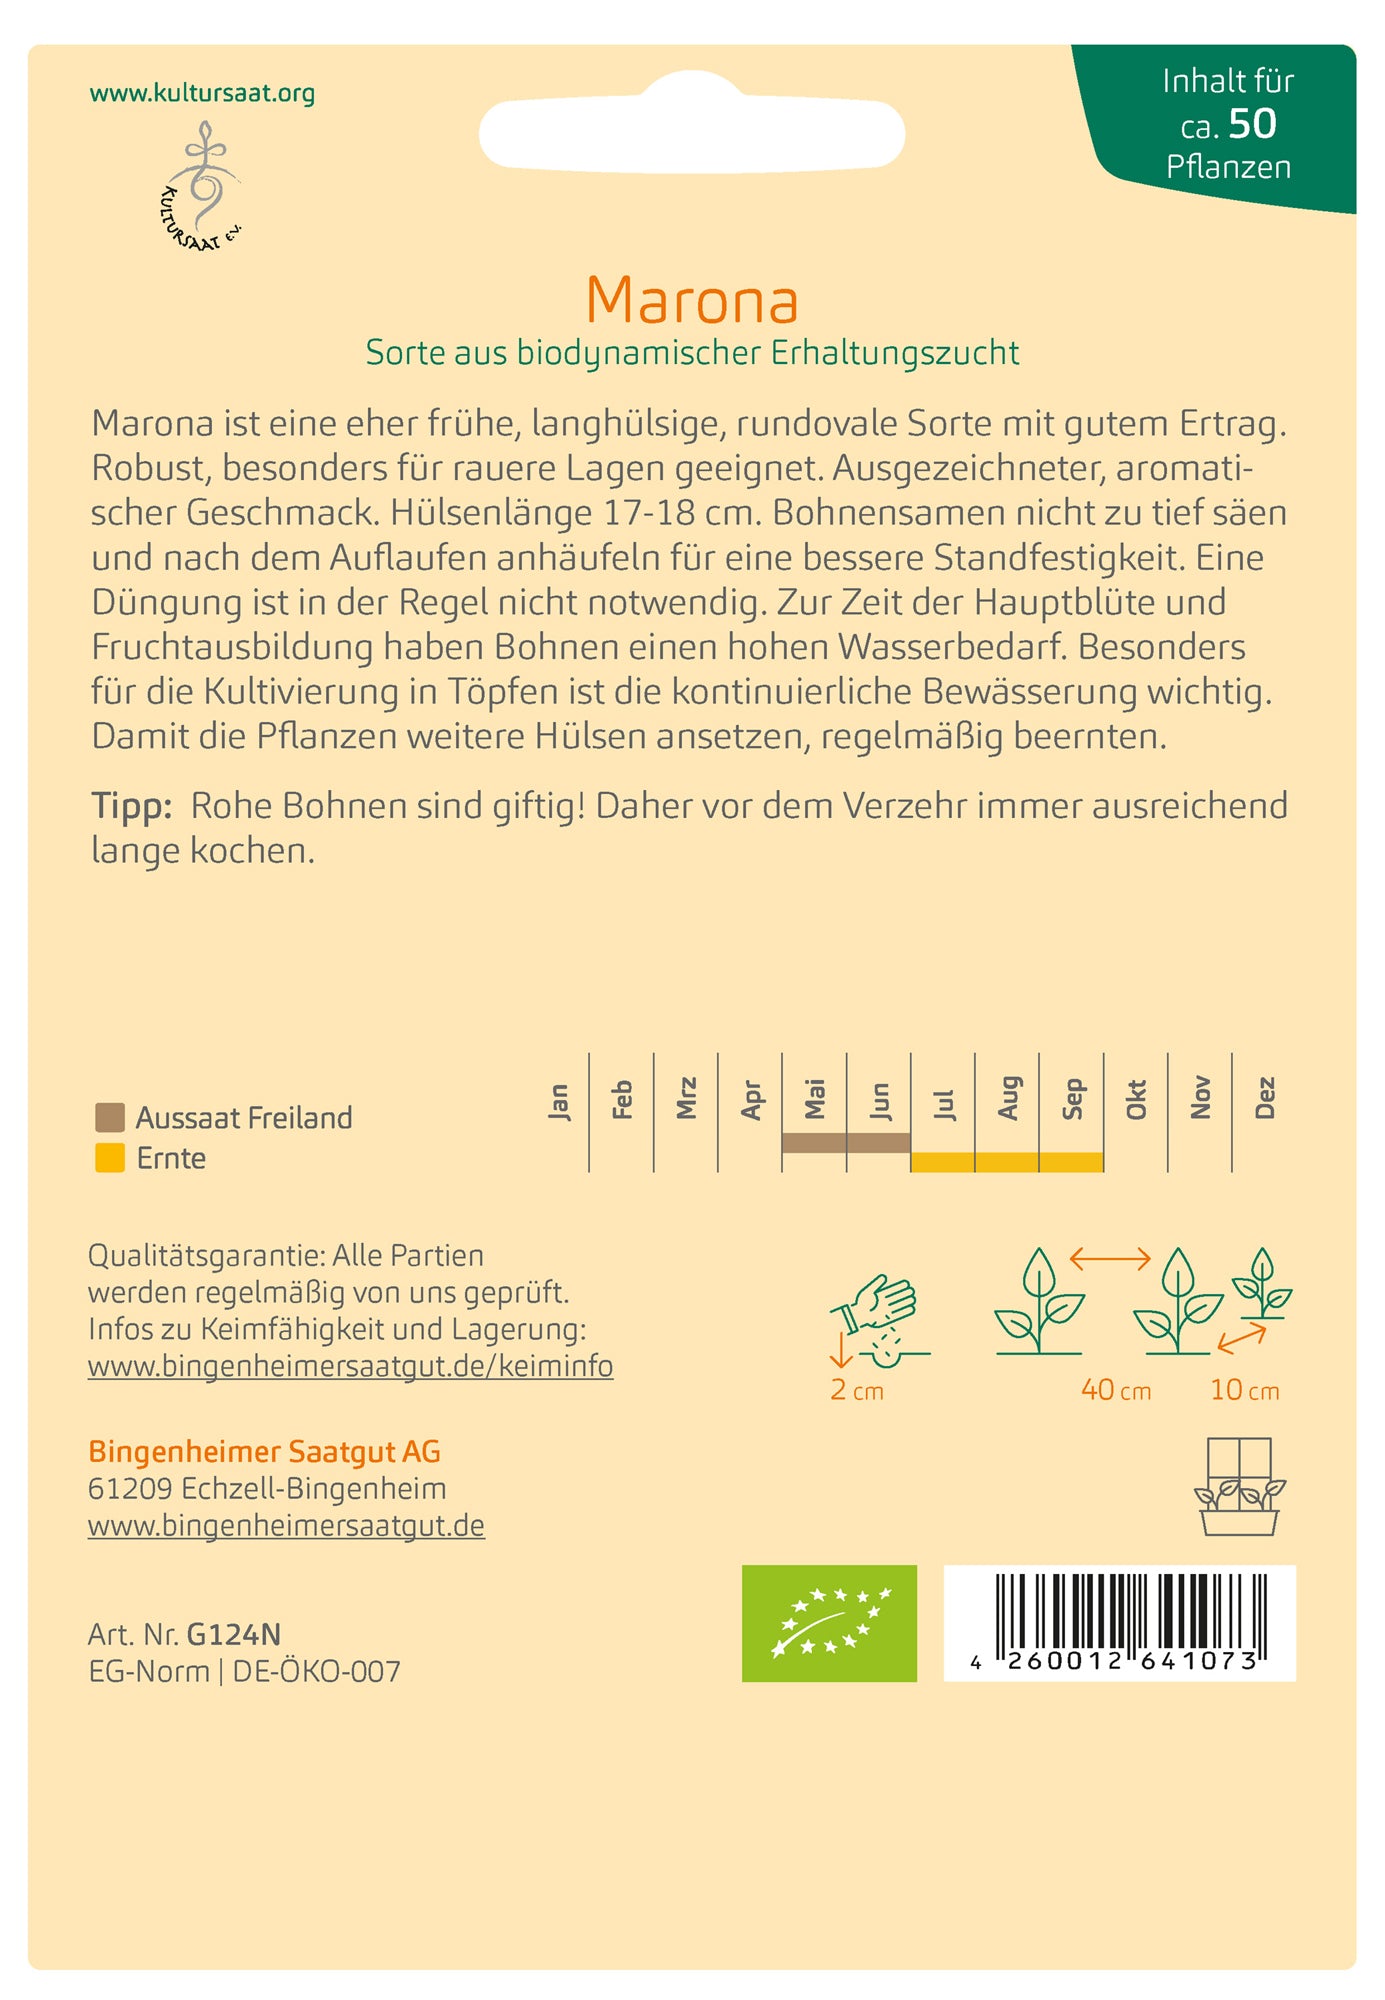 Buschbone Marona | BIO Buschbohnensamen von Bingenheimer Saatgut